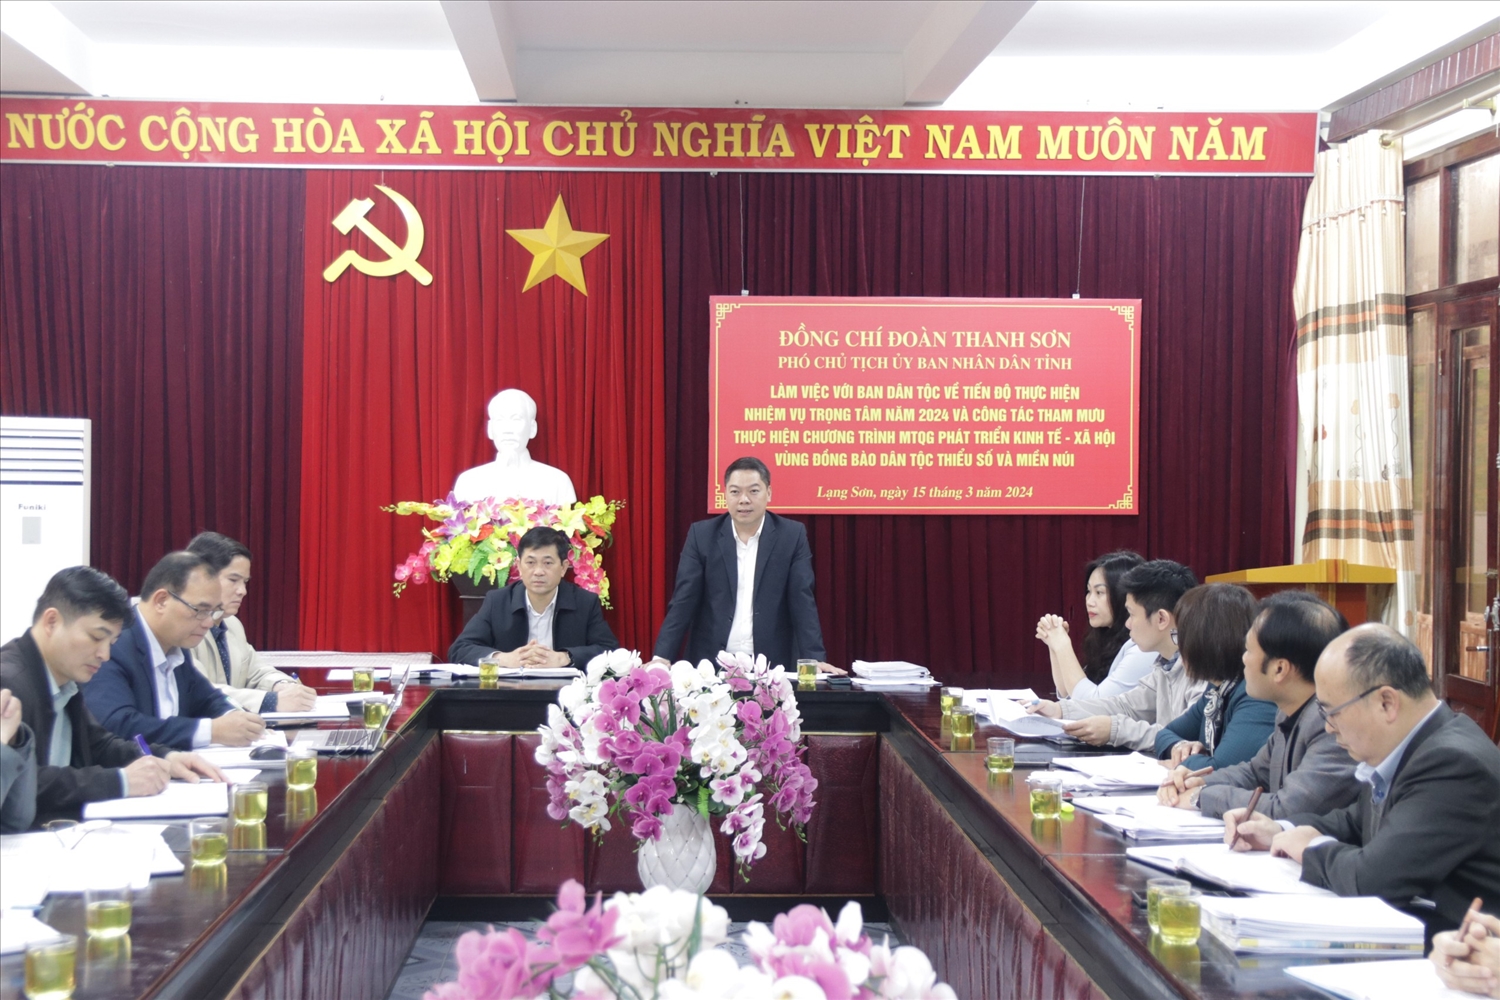 Ông Đoàn Thanh Sơn, Phó Chủ tịch UBND tỉnh Lạng Sơn phát biểu tại buổi làm việc